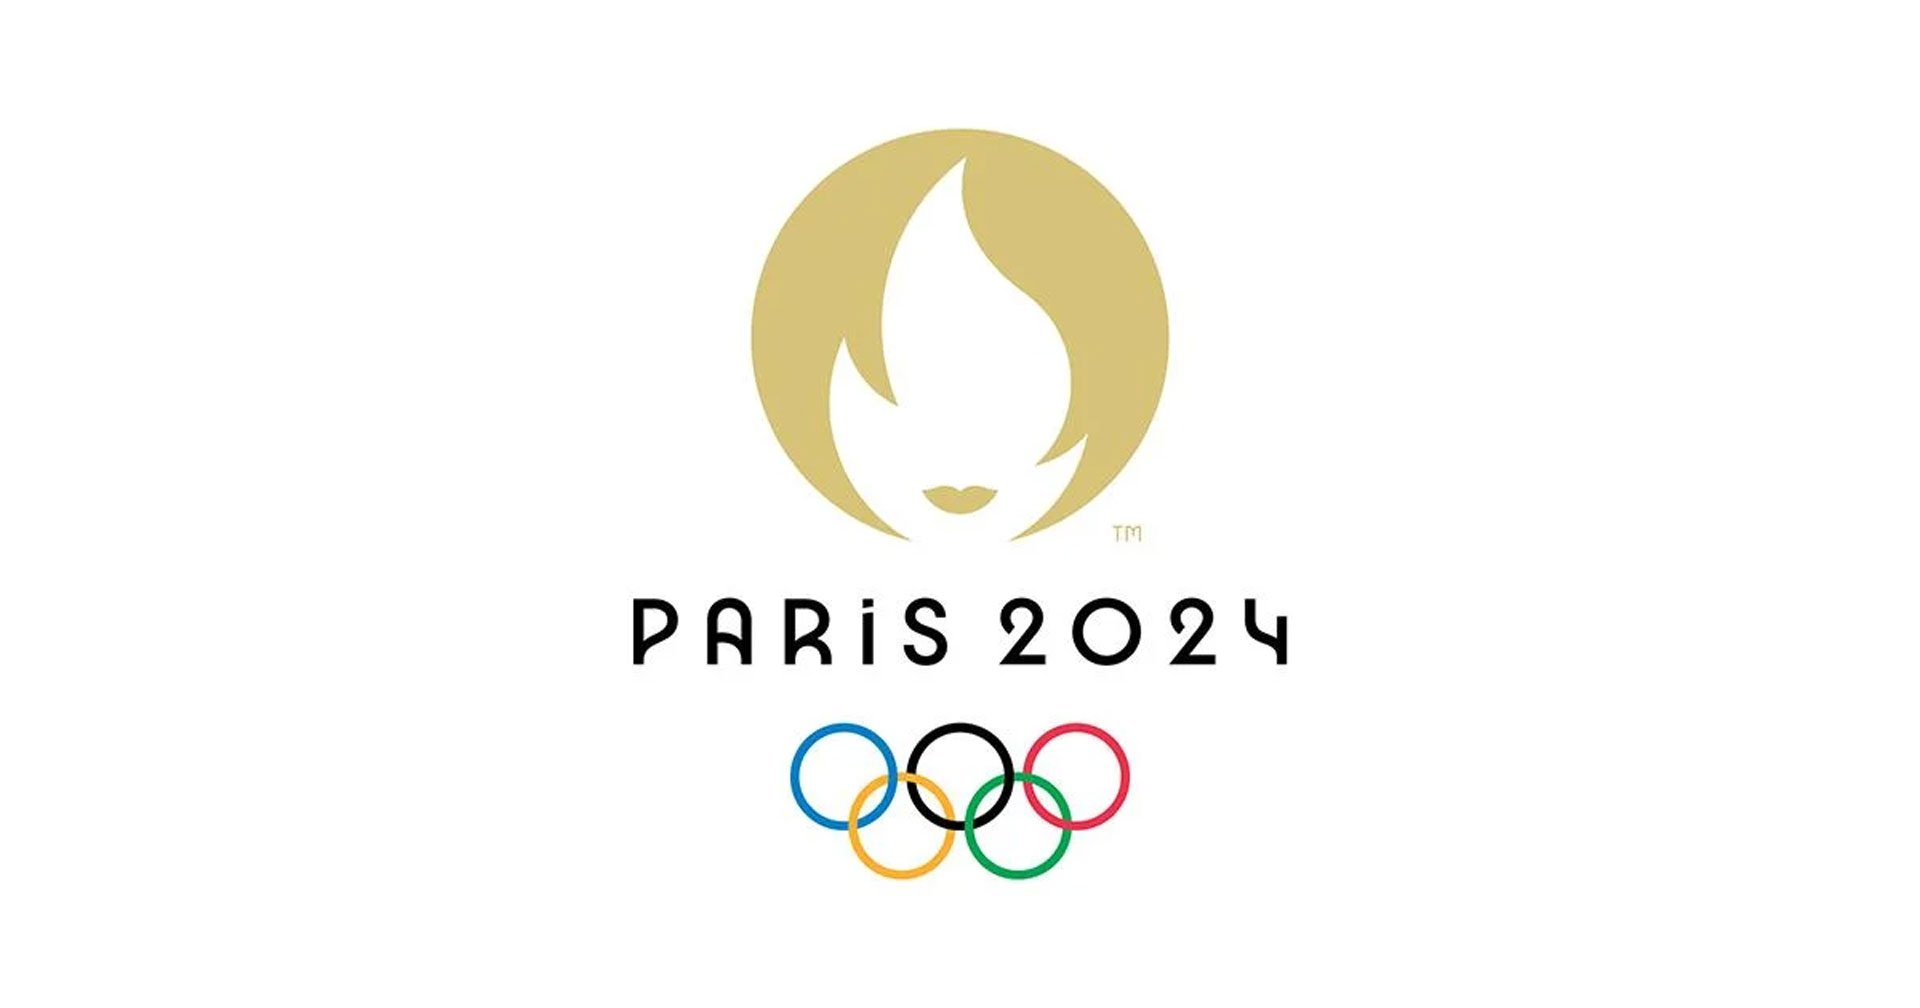 ญี่ปุ่นพัฒนา “ชุดกีฬาป้องกันถ่ายทะลุด้วยกล้อง Infrared” เตรียมใช้ใน Olympic Paris 2024